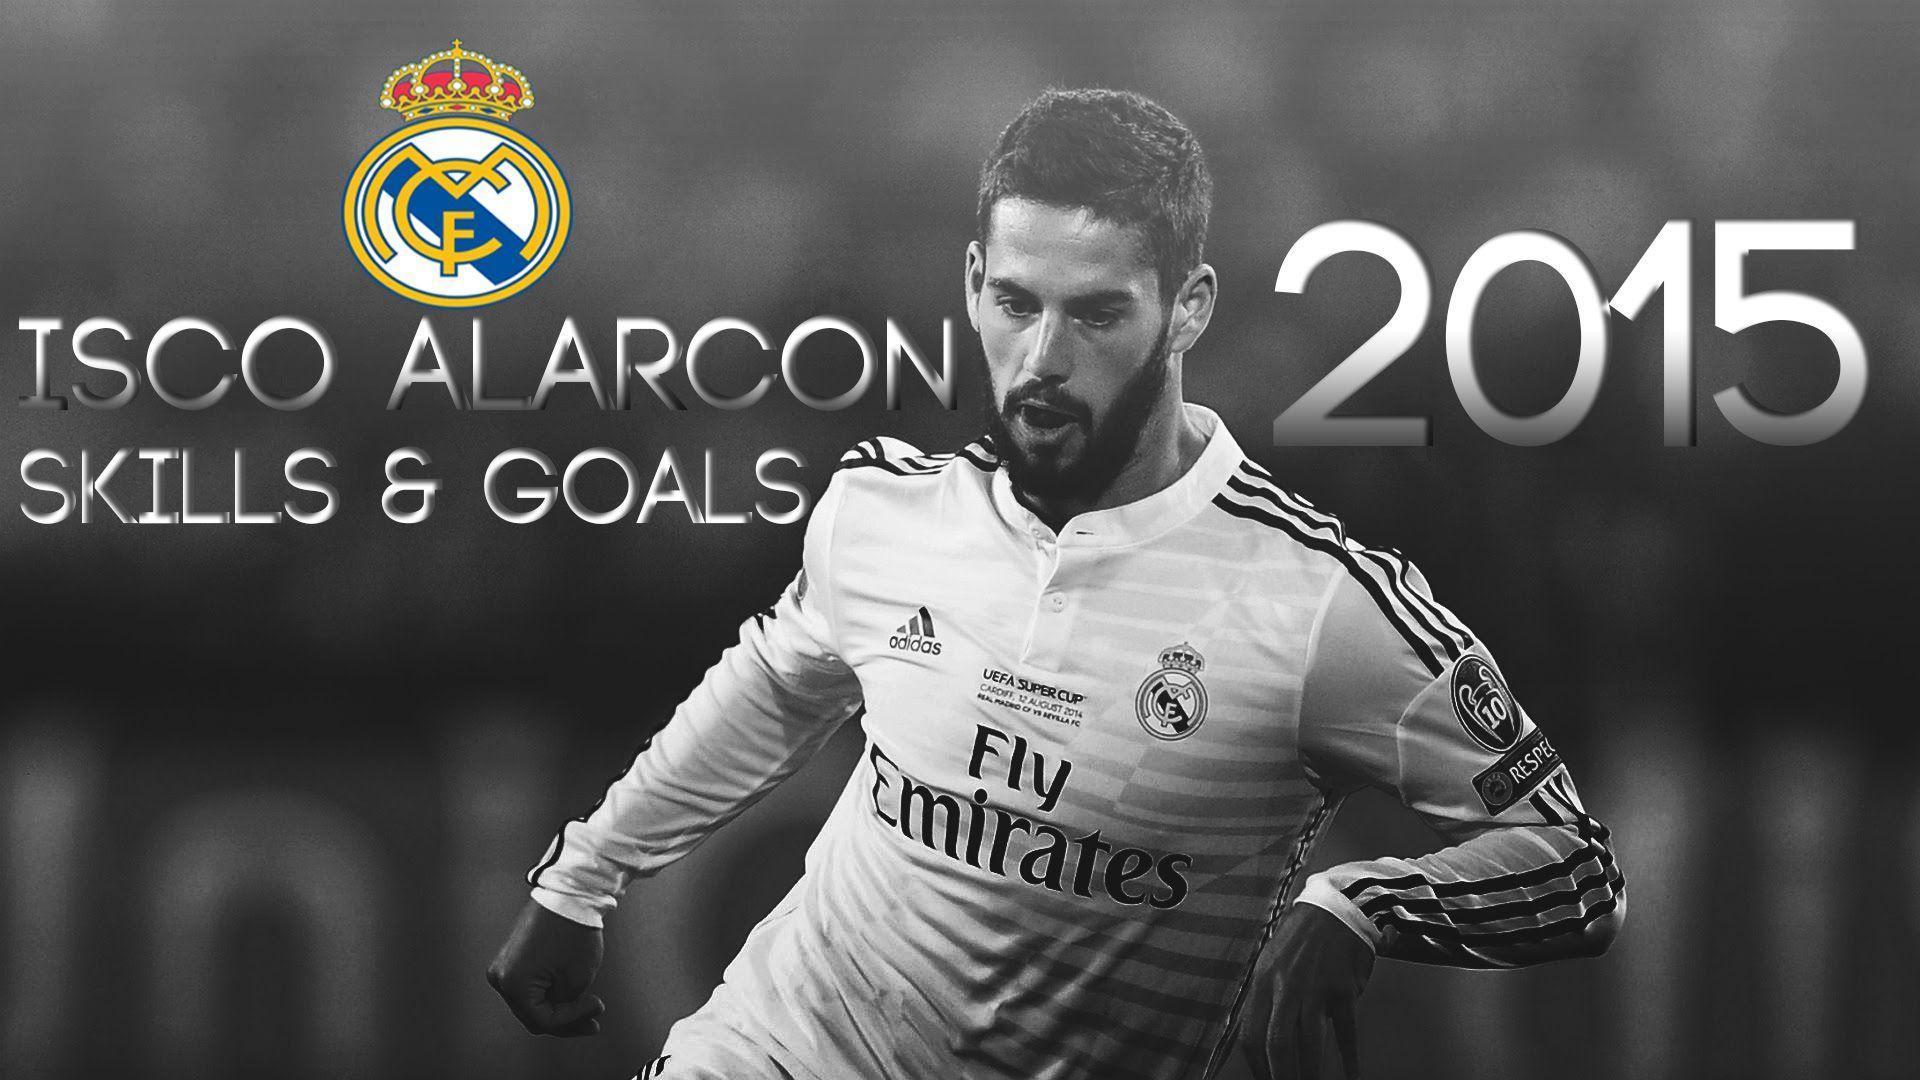 Isco Alarcón Skills & Goals 2015